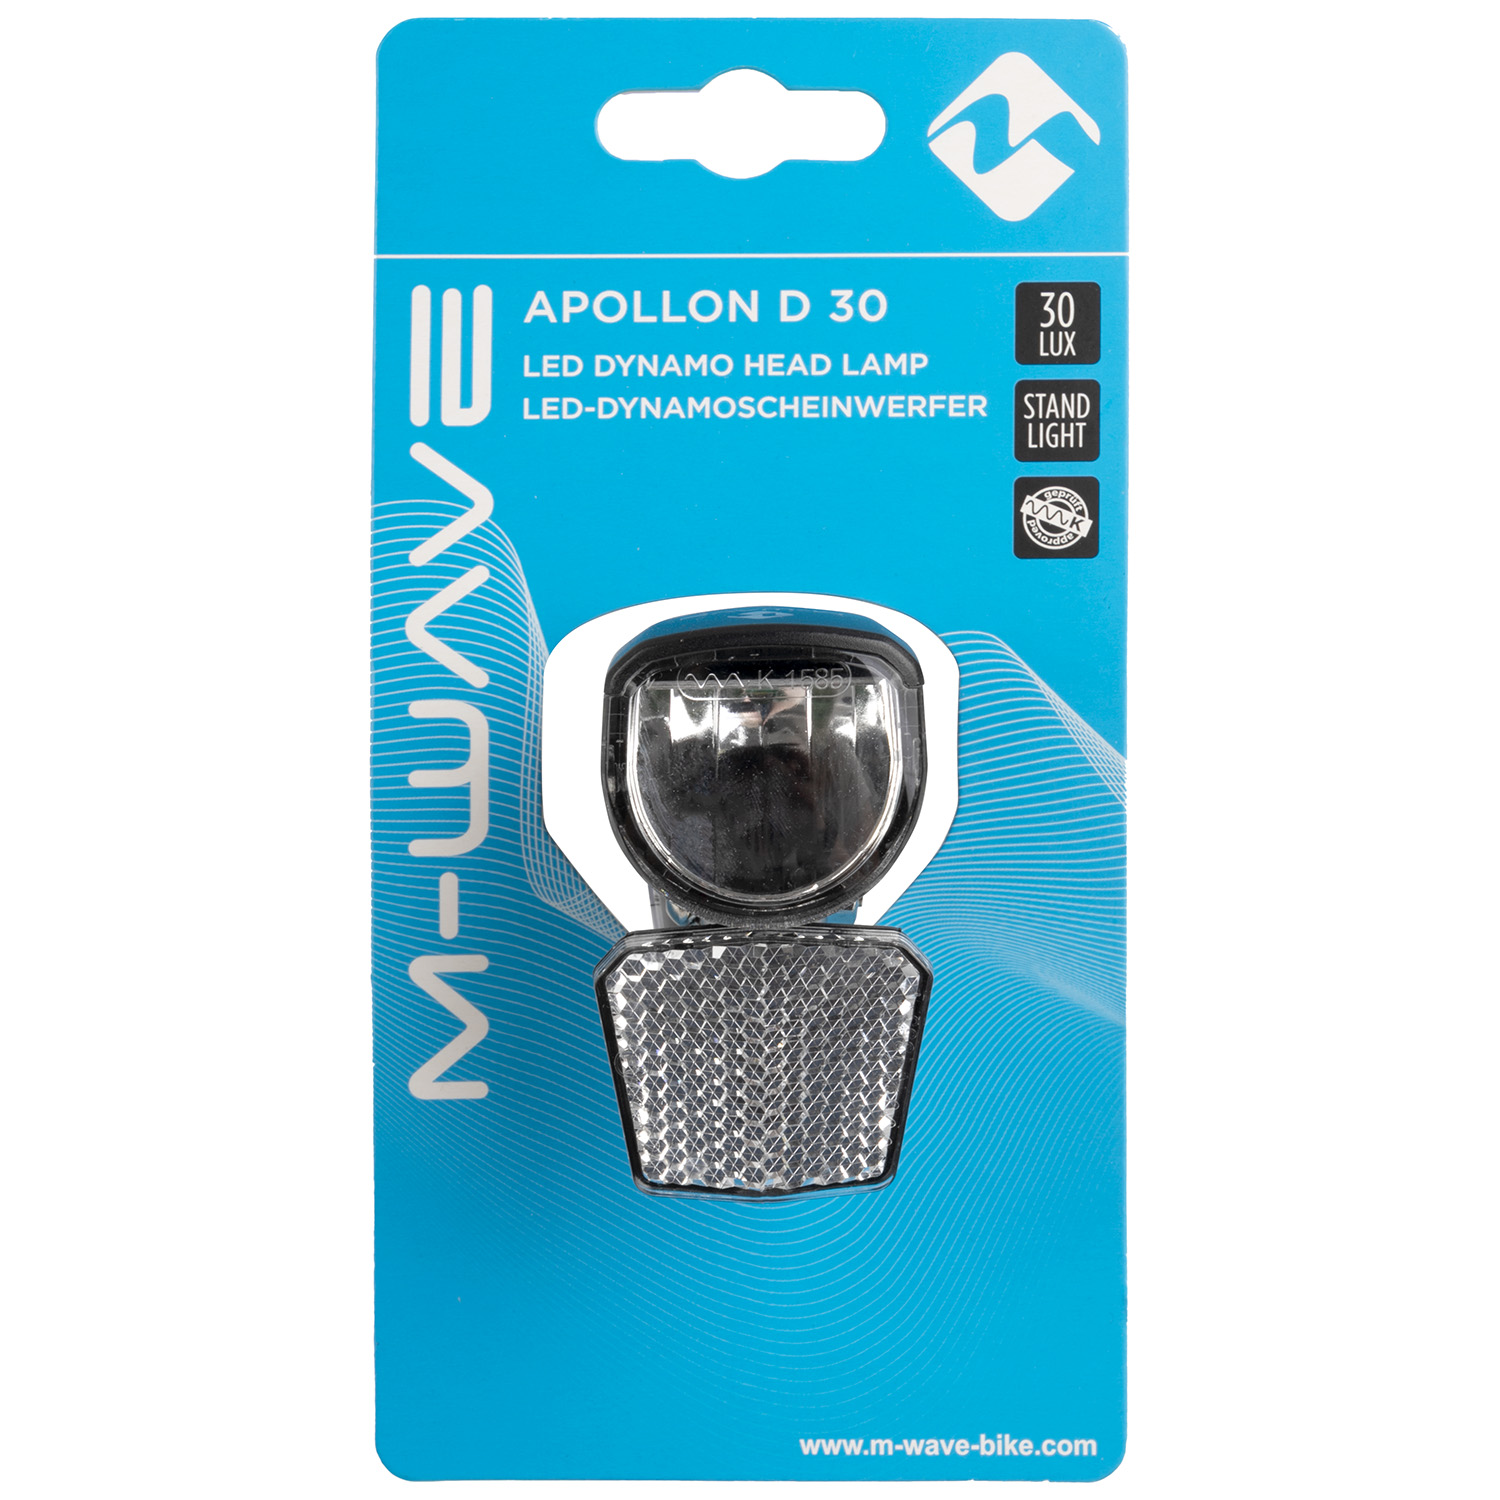 LED-Scheinwerfer APOLLON 30 ND für Dynamobetrieb in schwarz